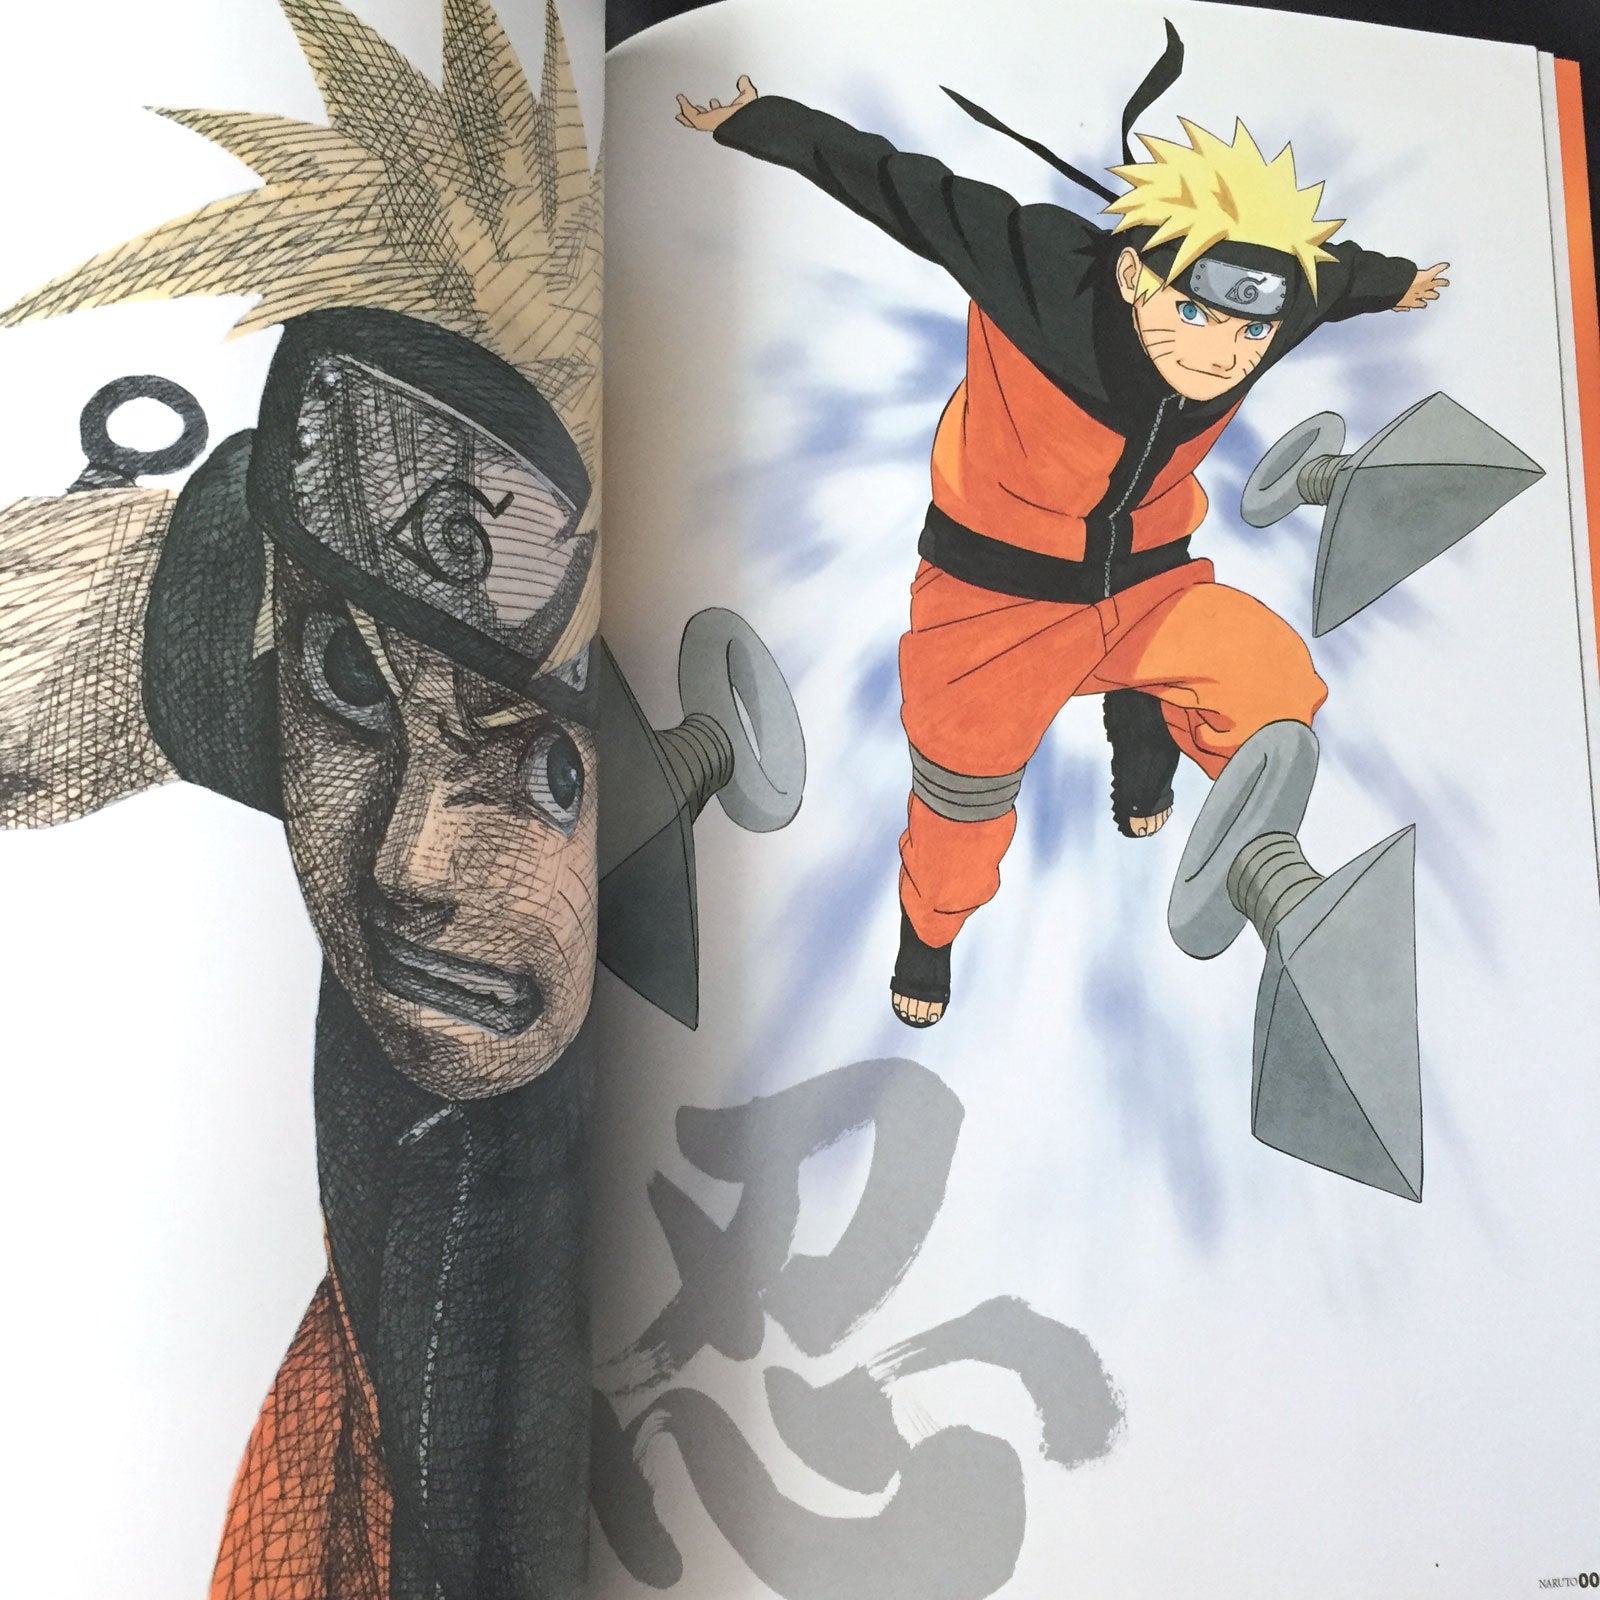 Masashi Kishimoto: Naruto Official Book Road To Ninja 'Maki no Sho' JAPAN